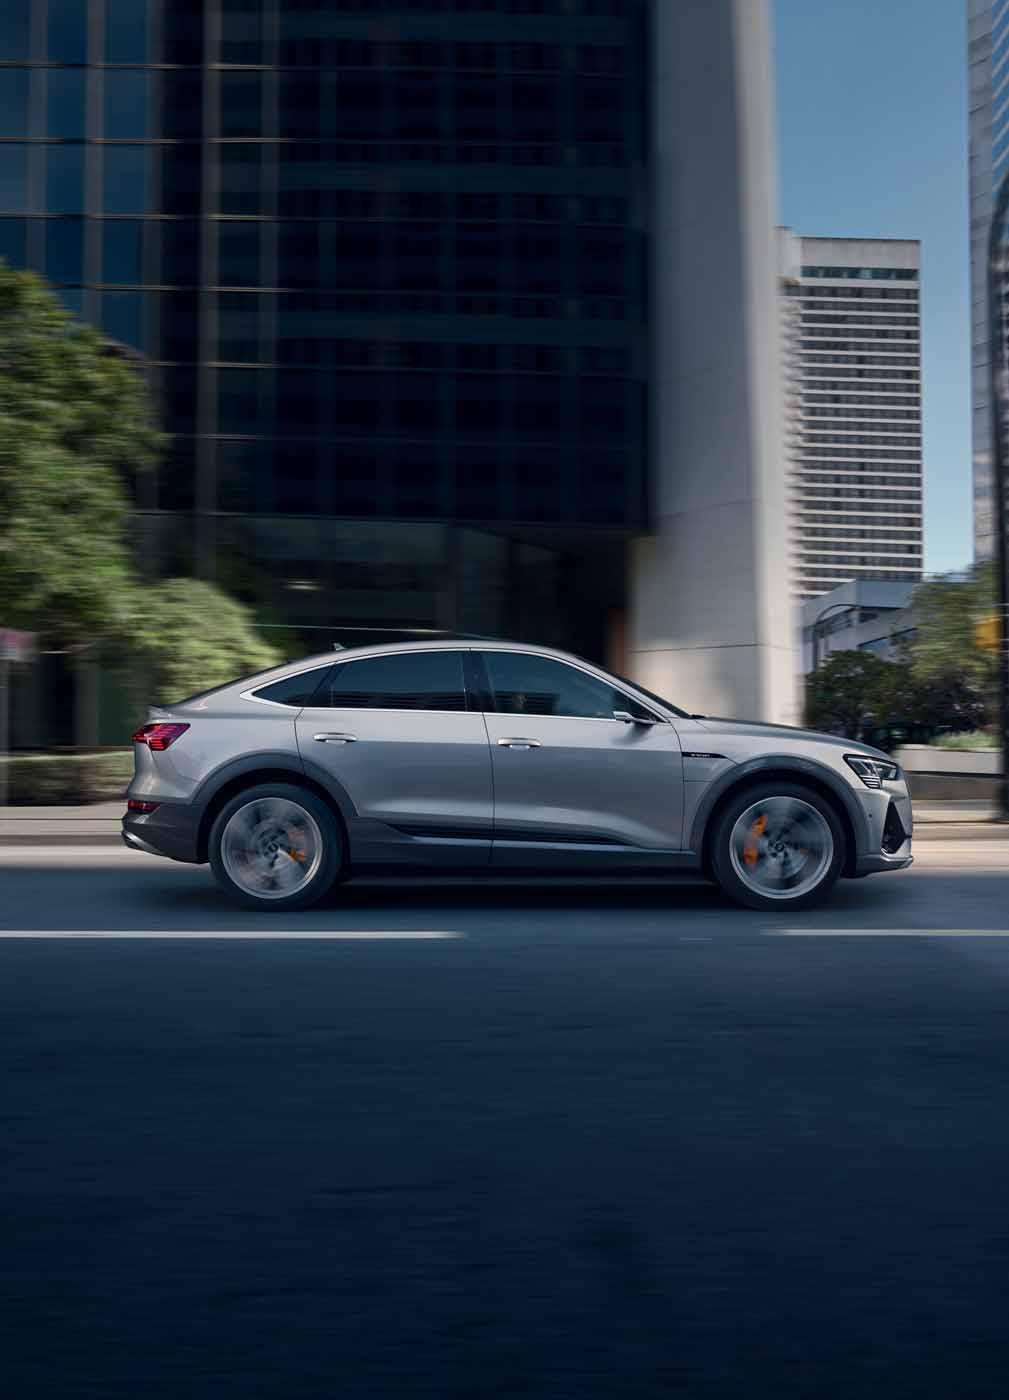 Audi Vorsprung durch Technik Bringt neue Energie in die Flotte. Dienstwagen mit Premium-Elektromobilität für Ihren Fuhrpark: jetzt bis zu 7.